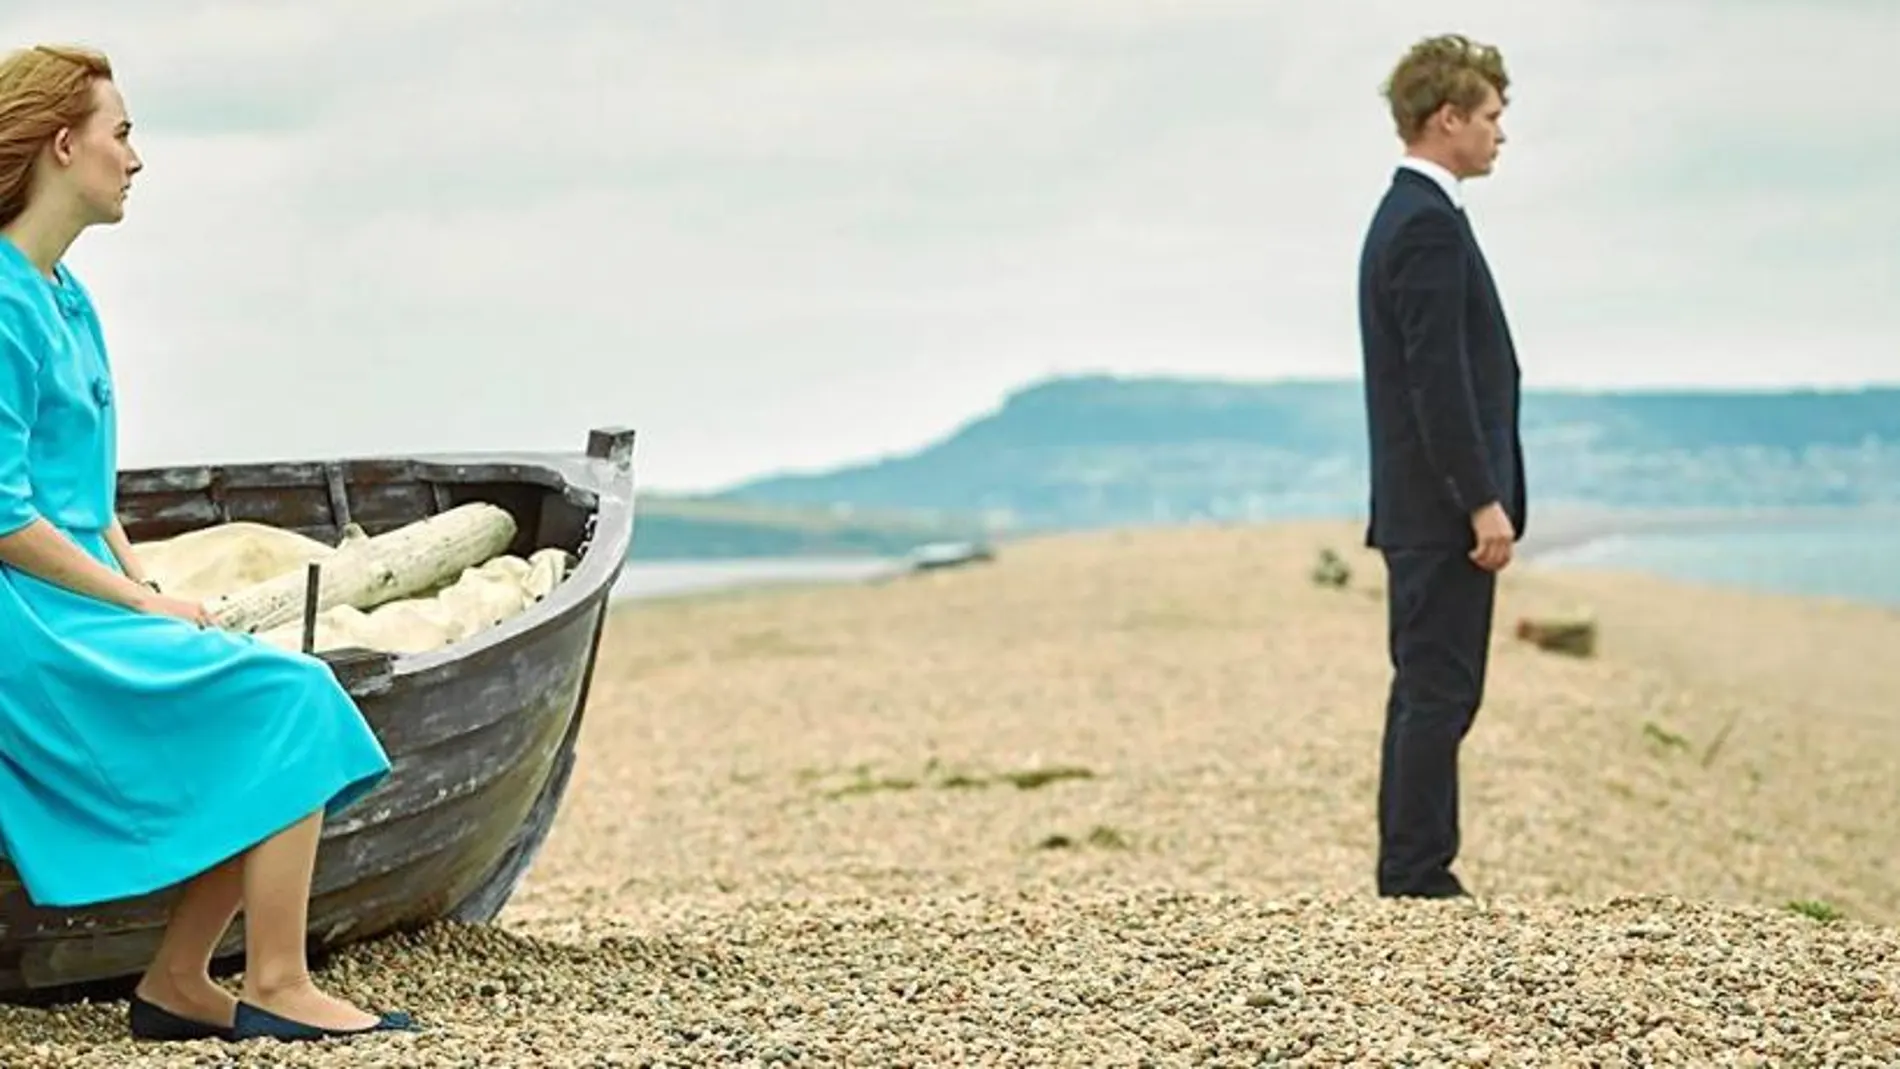 Saoirse Ronan y Billy Howle en una de las escenas de la película grabadas en la playa de Chesil, que da nombre a la película y es punto de inflexión en la historia.